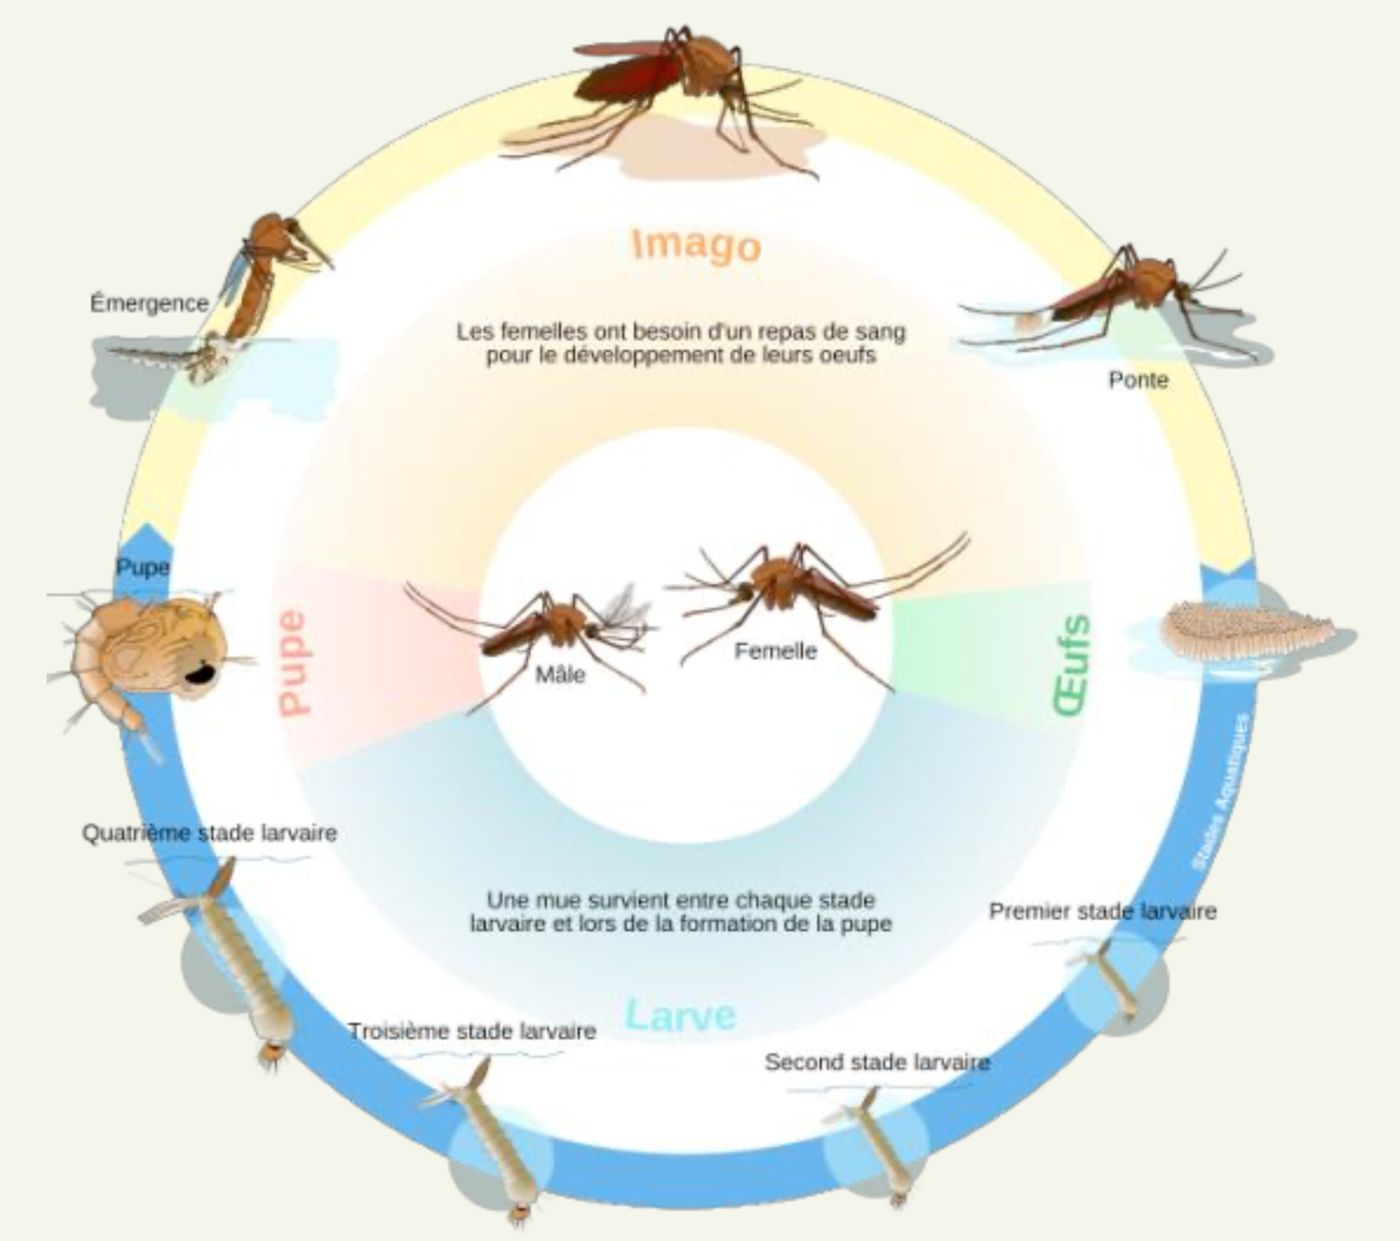 Le cycle de développement des moustiques comprend 4 étapes : œufs, larves (4 stades larvaires), nymphes et adultes.